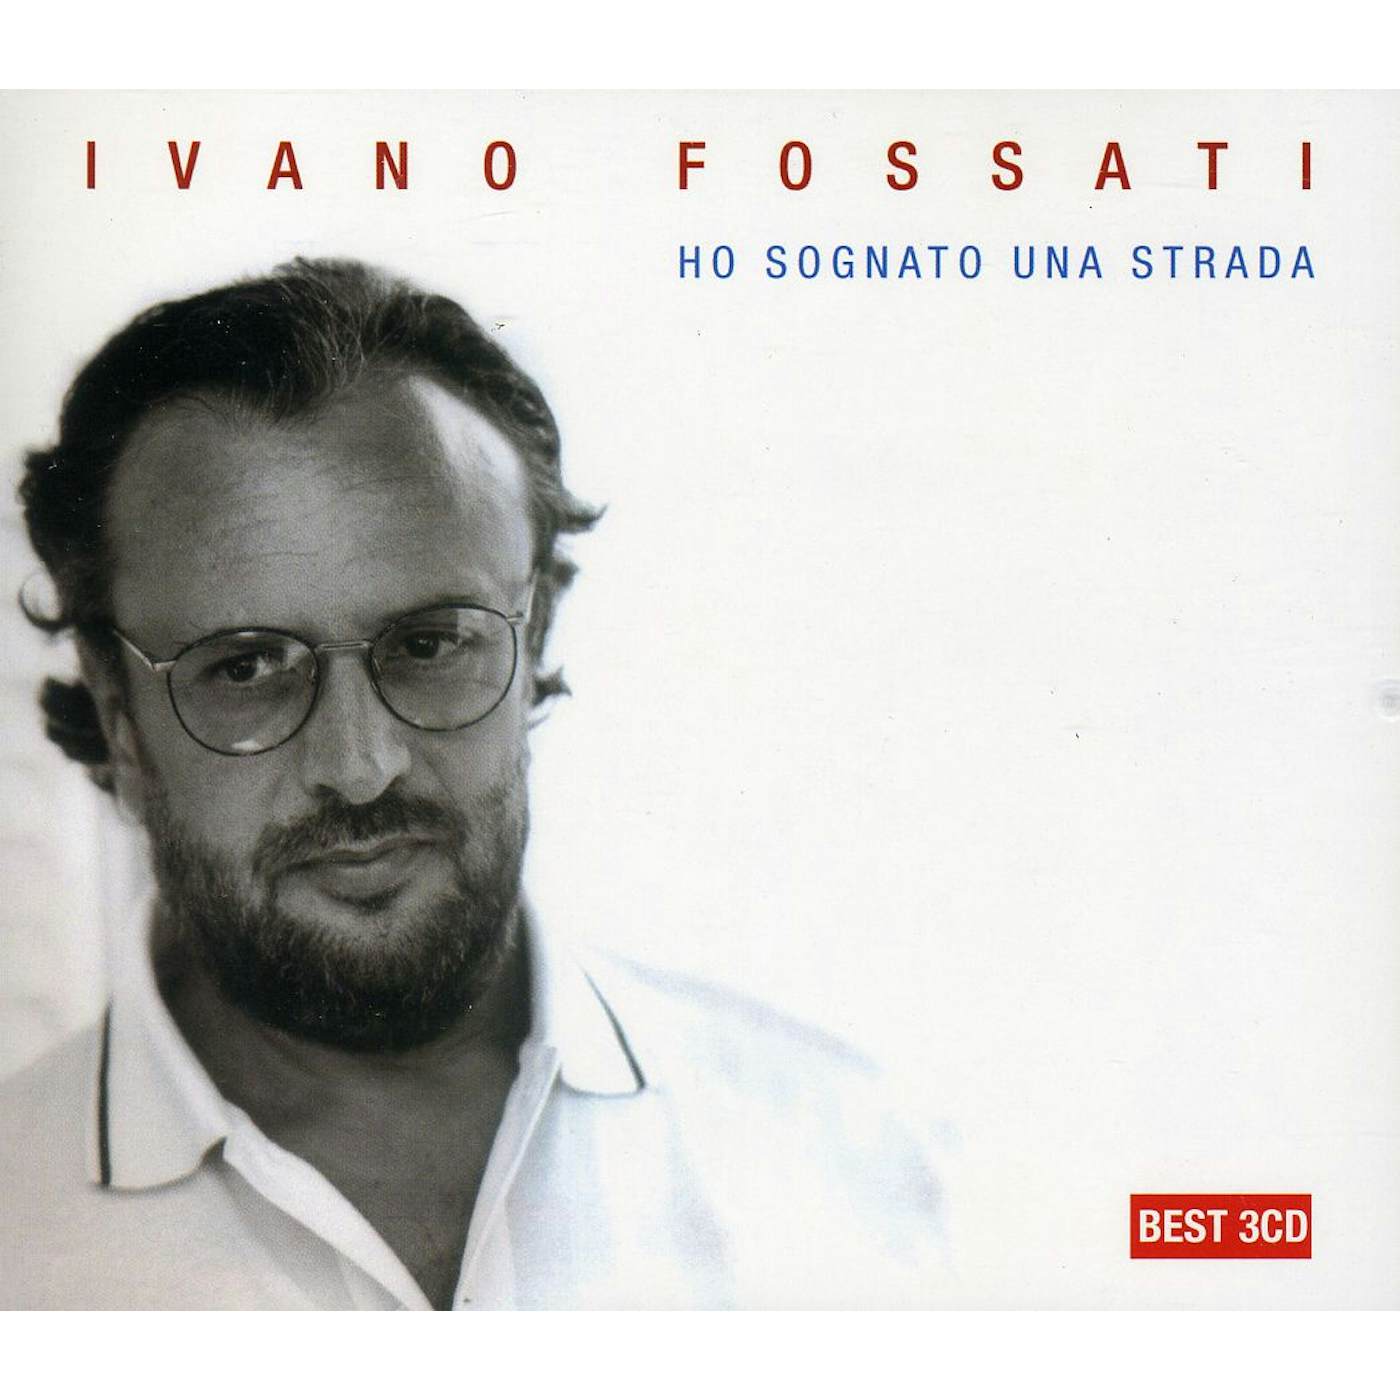 Ivano Fossati HO SOGNATO UNA STRADA CD